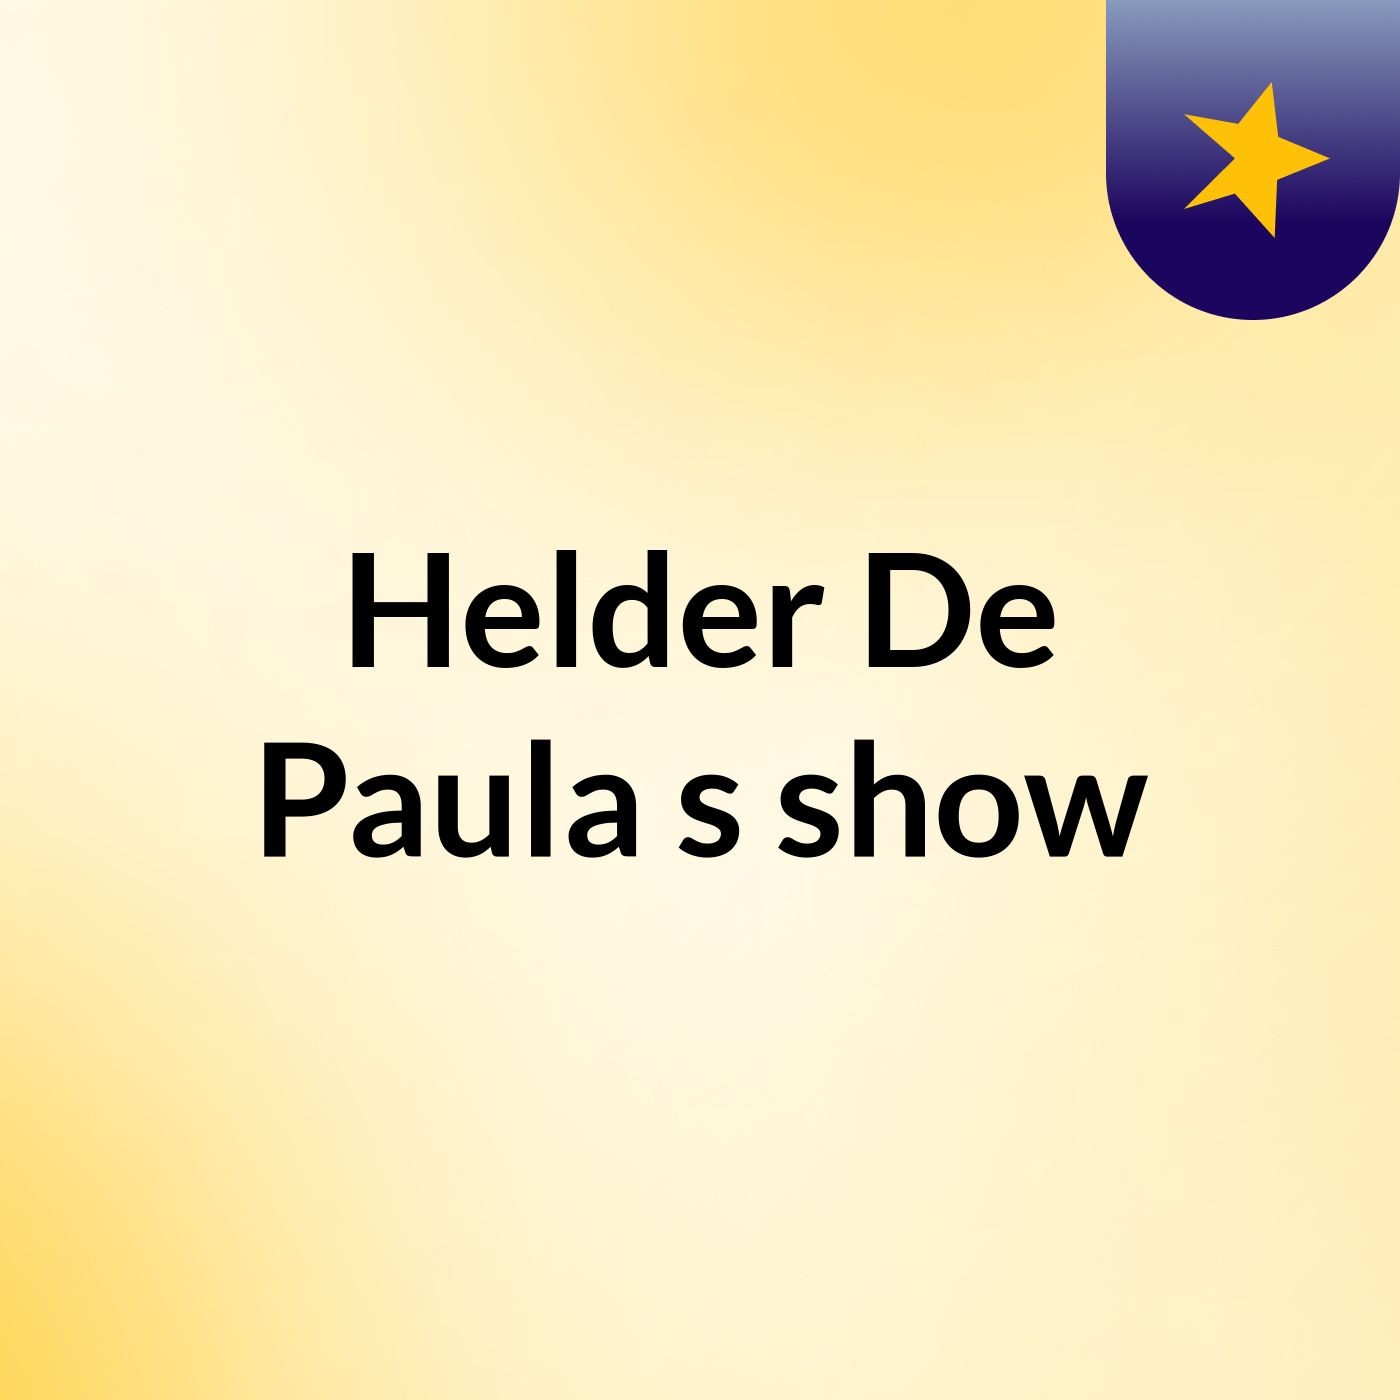 Helder De Paula's show